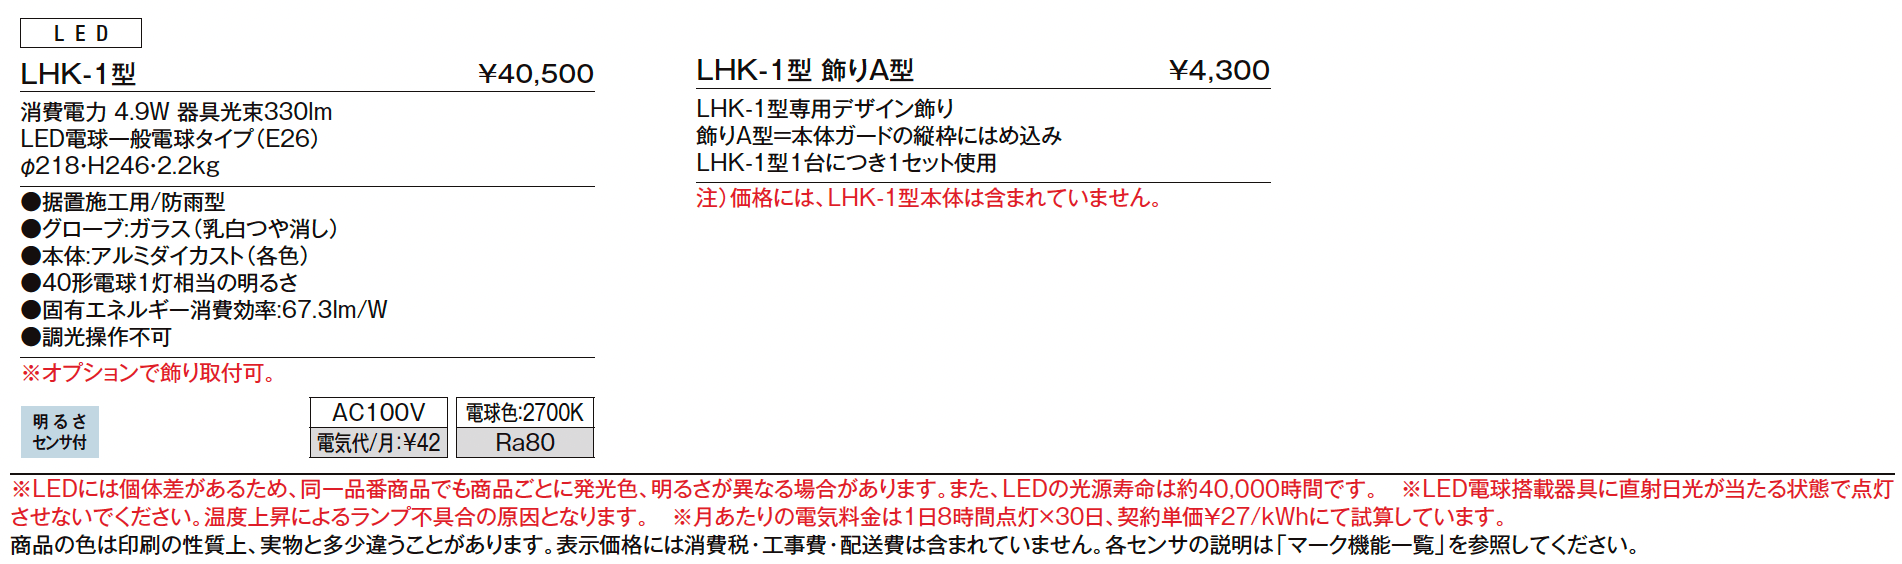 門柱灯 LHK-1型_価格_1